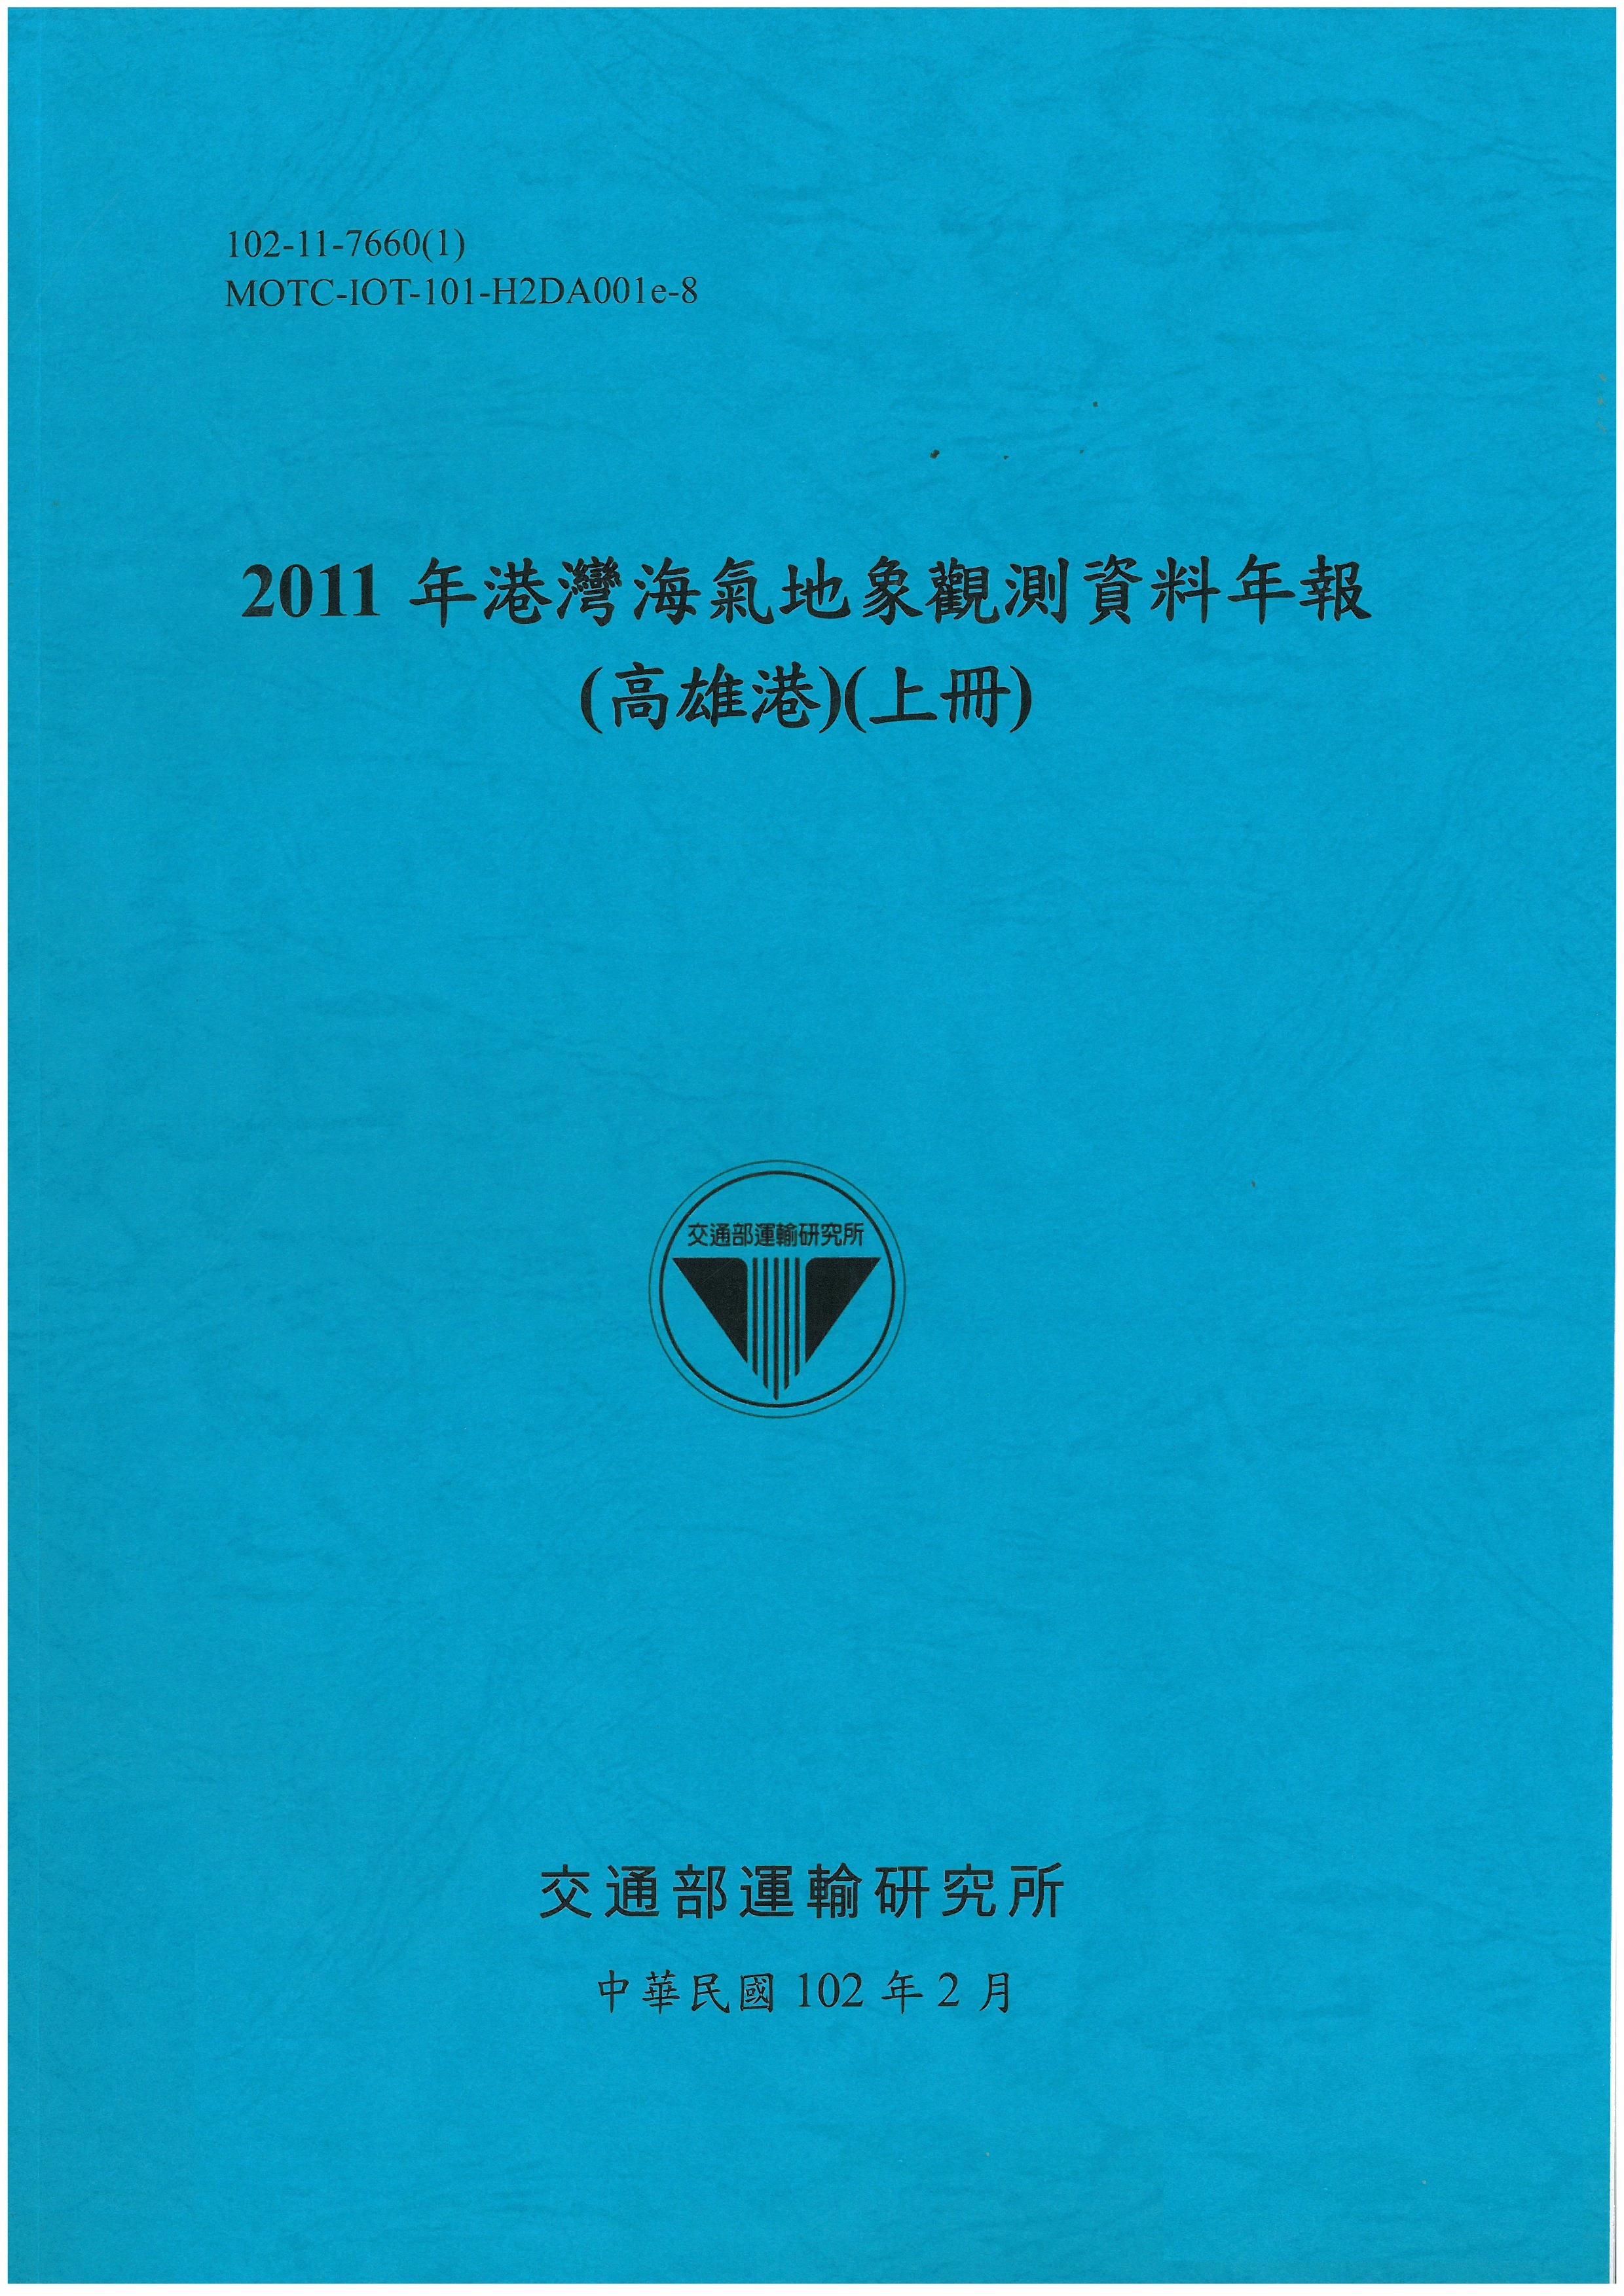 2011年港灣海氣地象觀測資料年報(高雄港)(上冊)